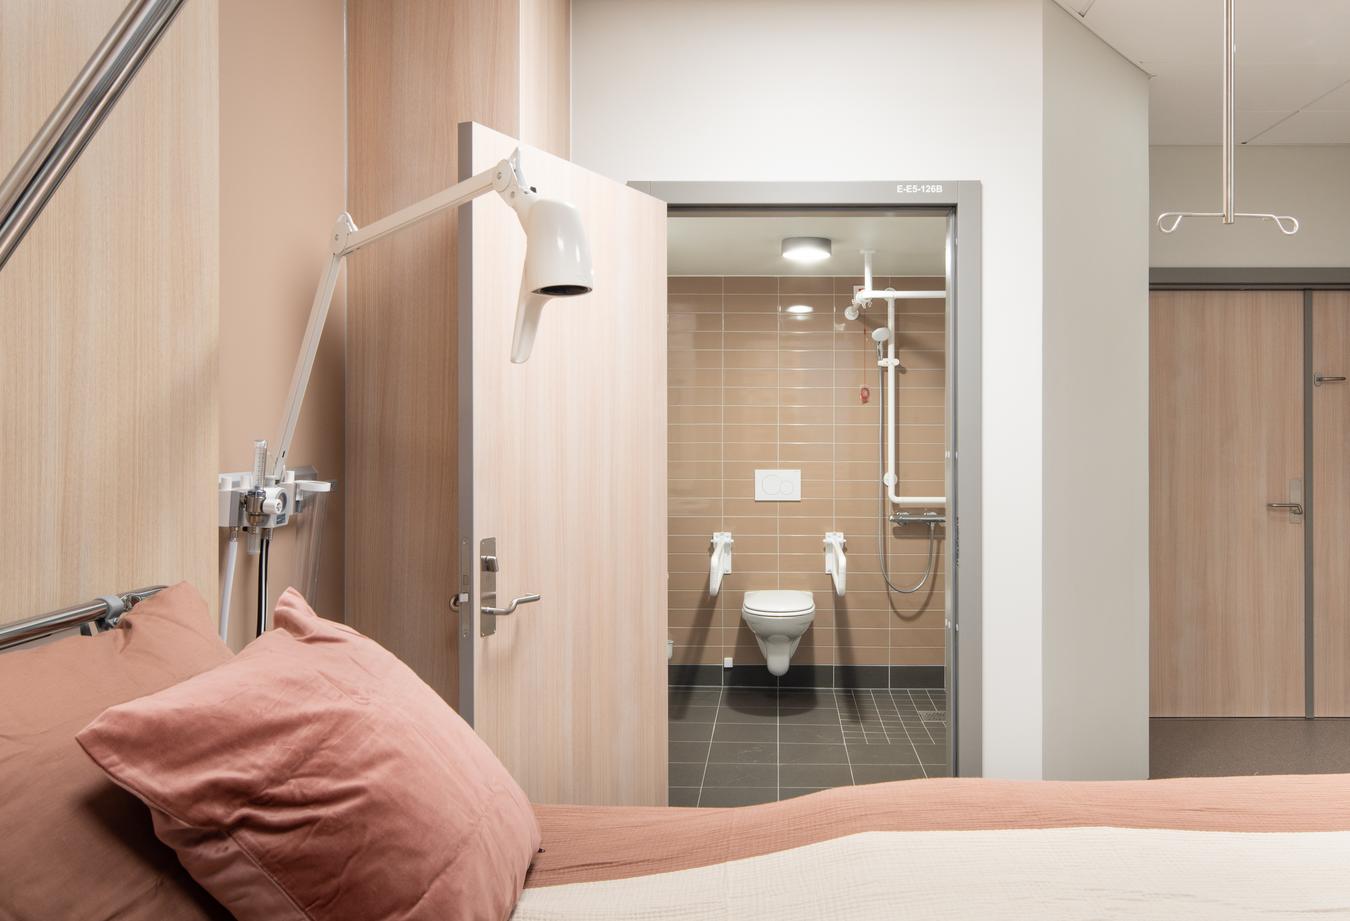 Patientværelse og badeværelse i beige toner. Foto